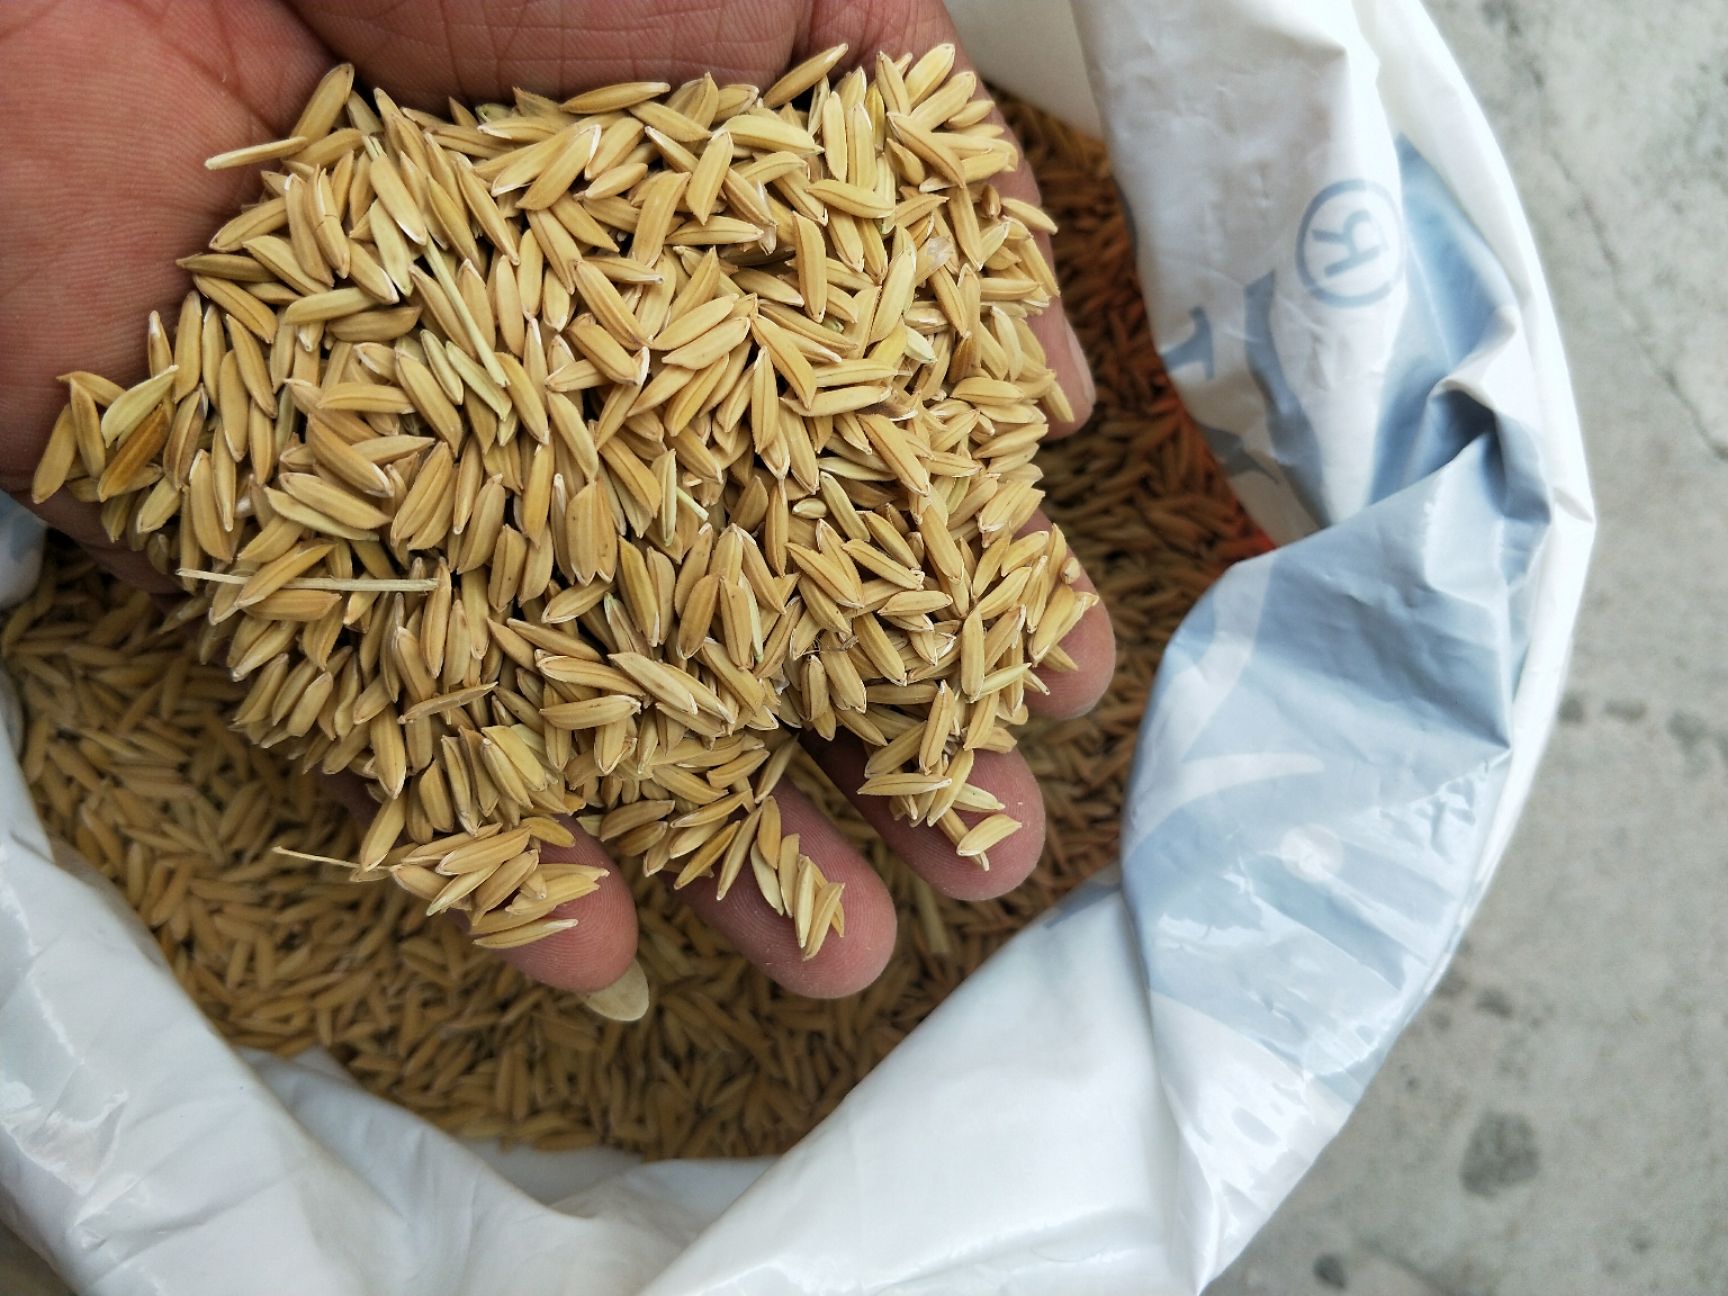 吉农大531水稻品种图片